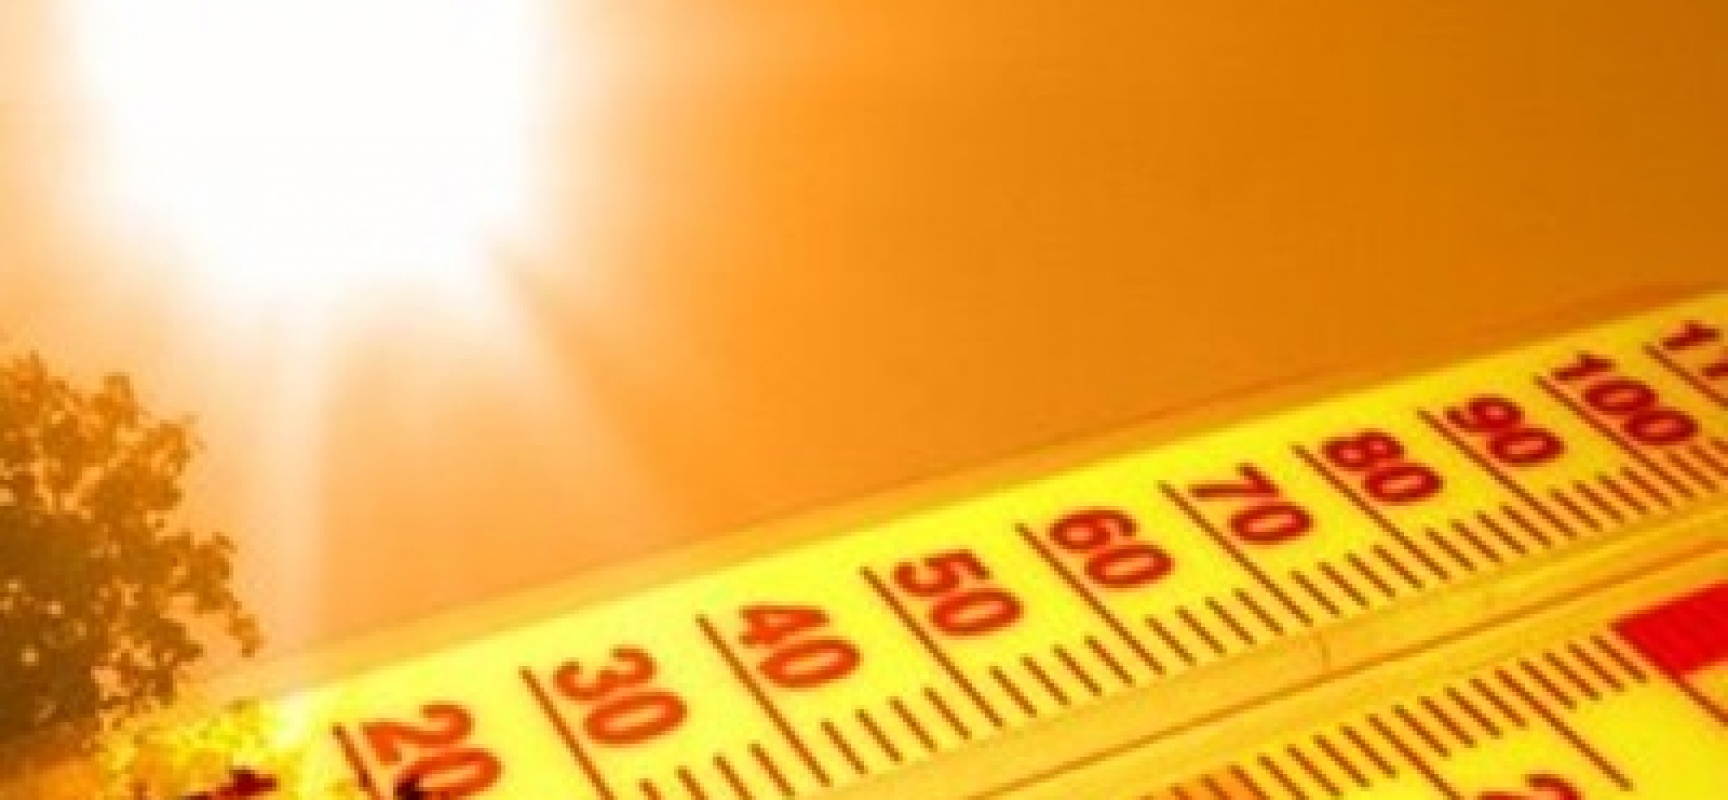 Το πιο ζεστό έτος που έχει καταγραφεί είναι το 2015- Oι υψηλότερες θερμοκρασίες από το 1880